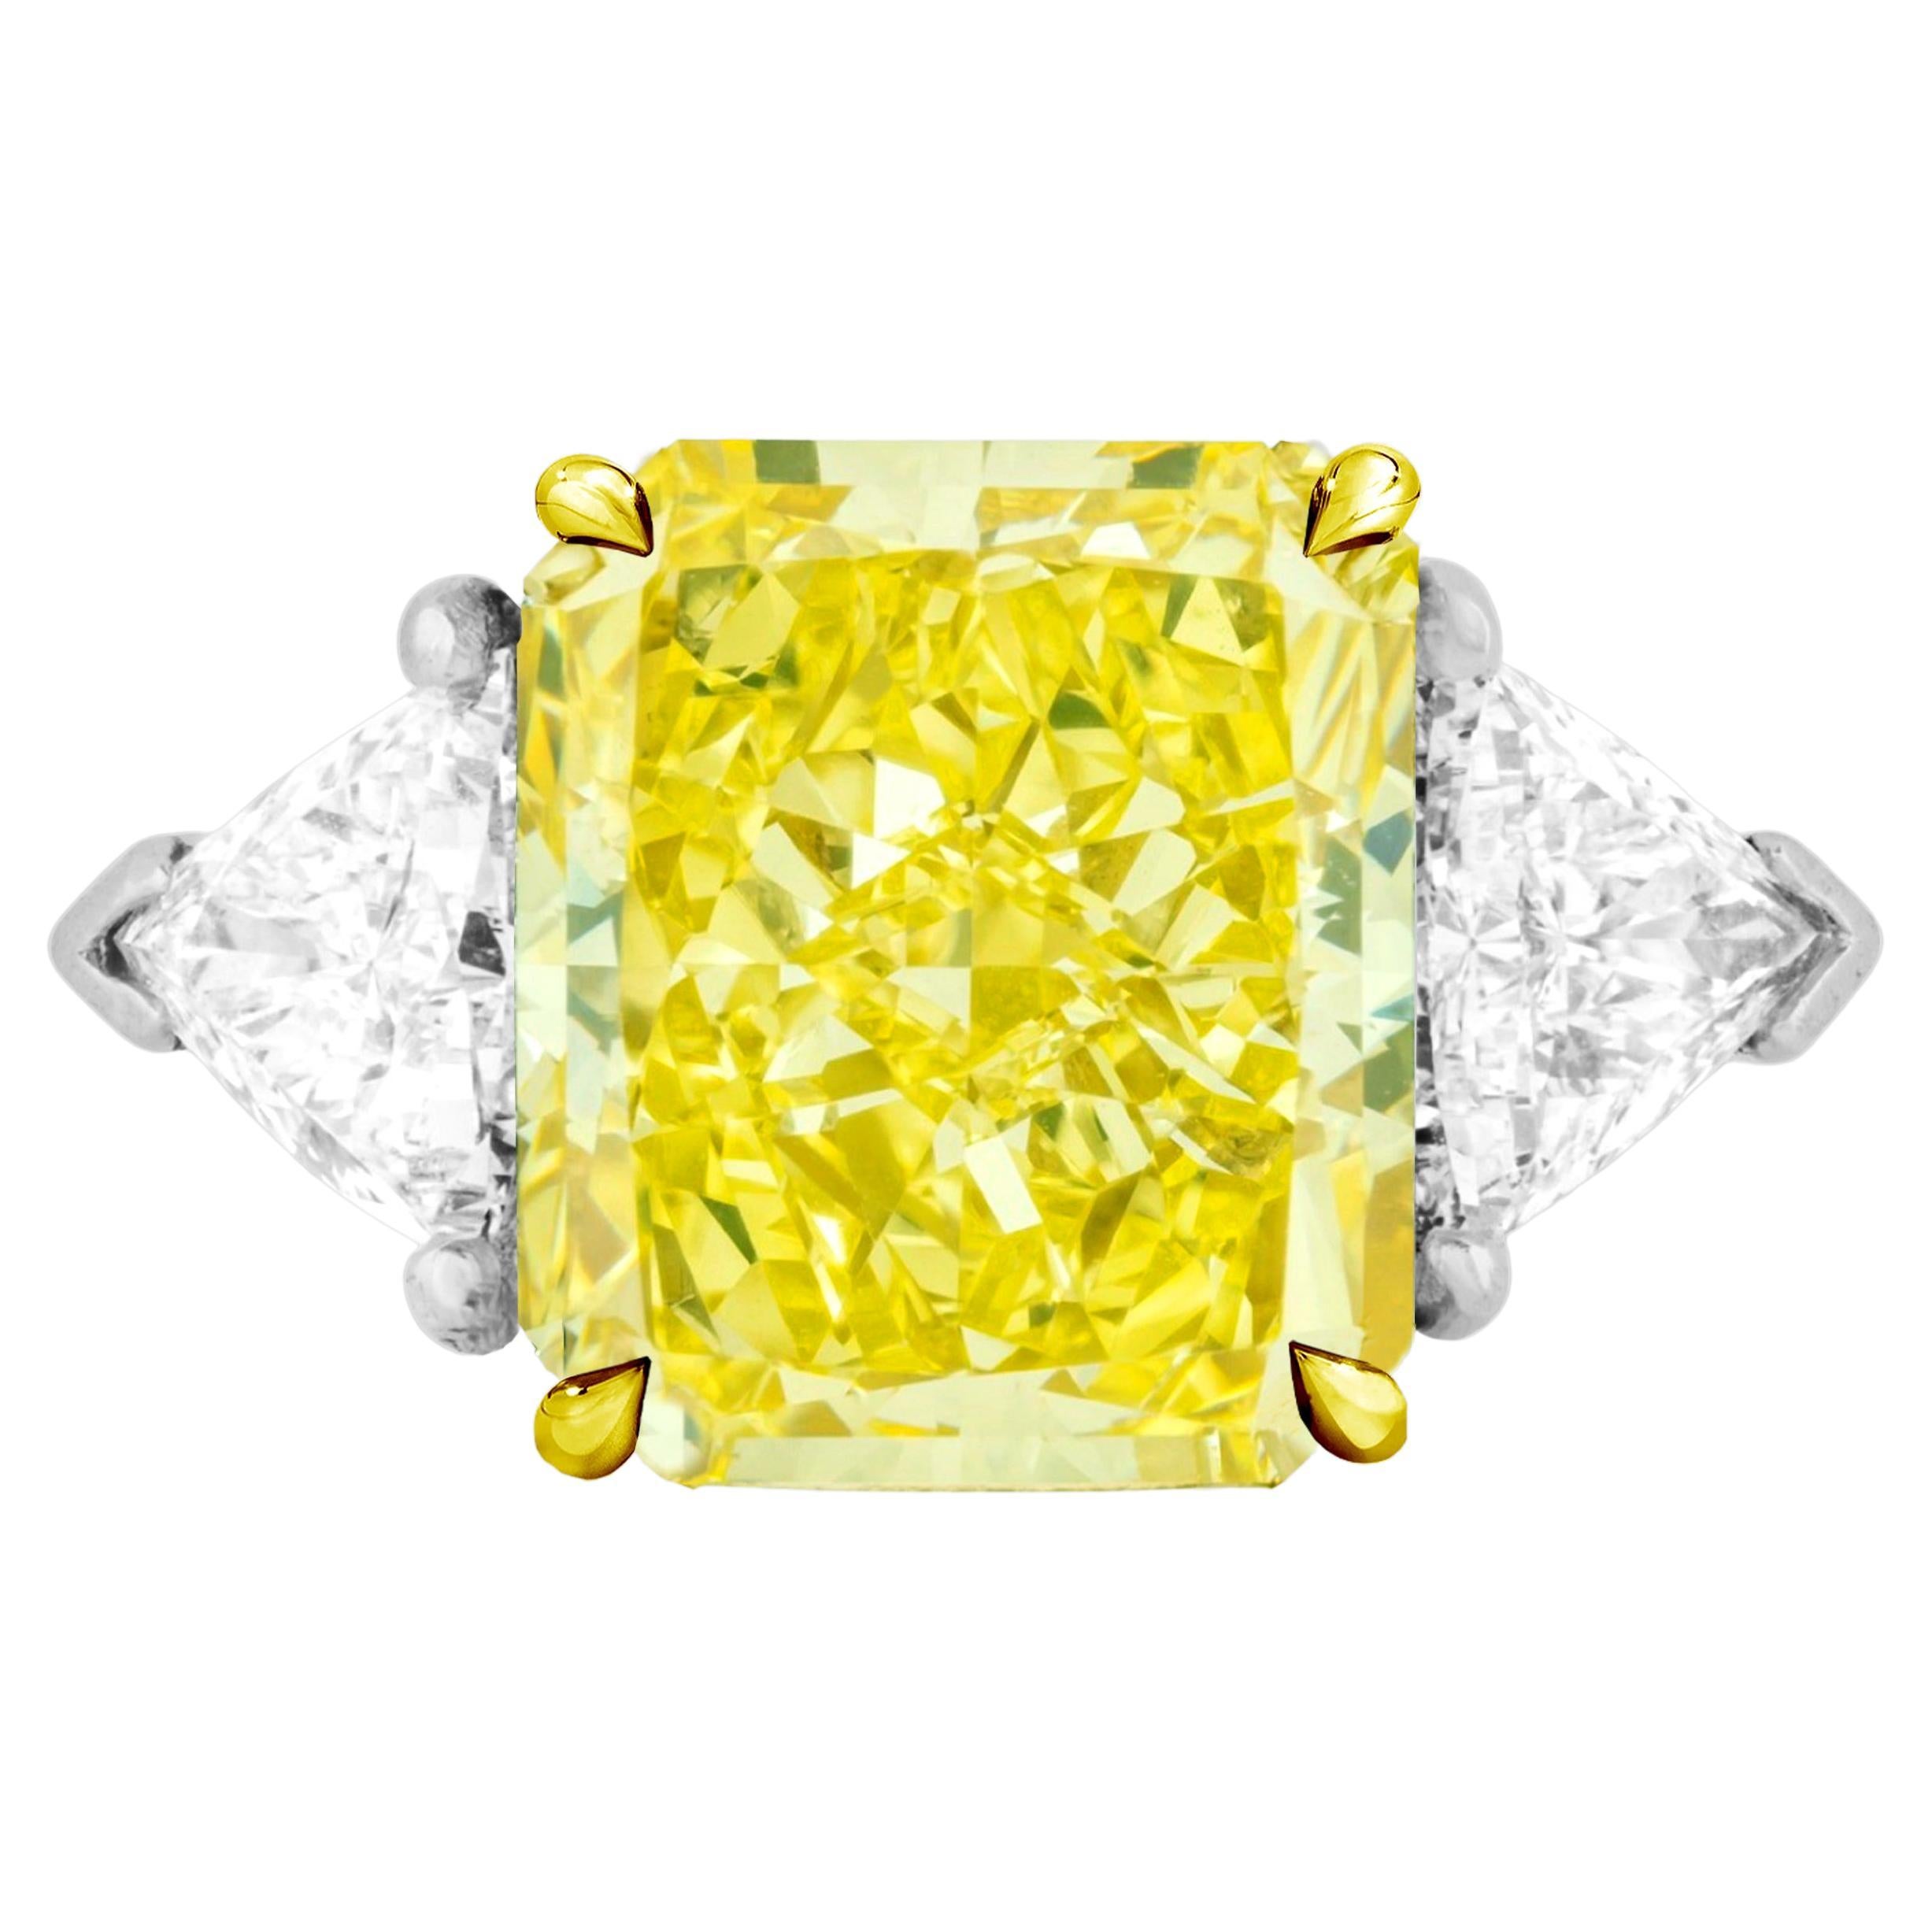 GIA Certified 4 Carat Fancy Intense Yellow Cushion Cut Diamond Ring 